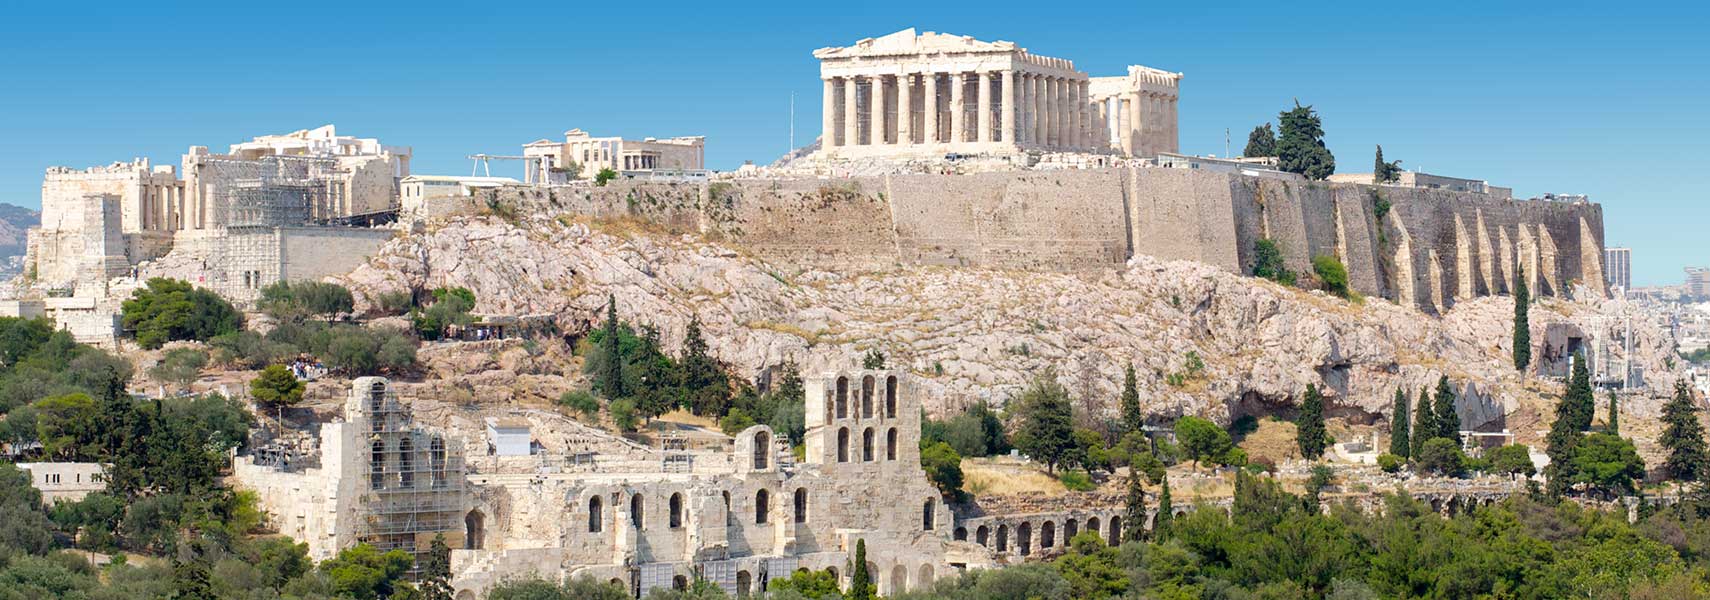 Acropolis Of Athens #7